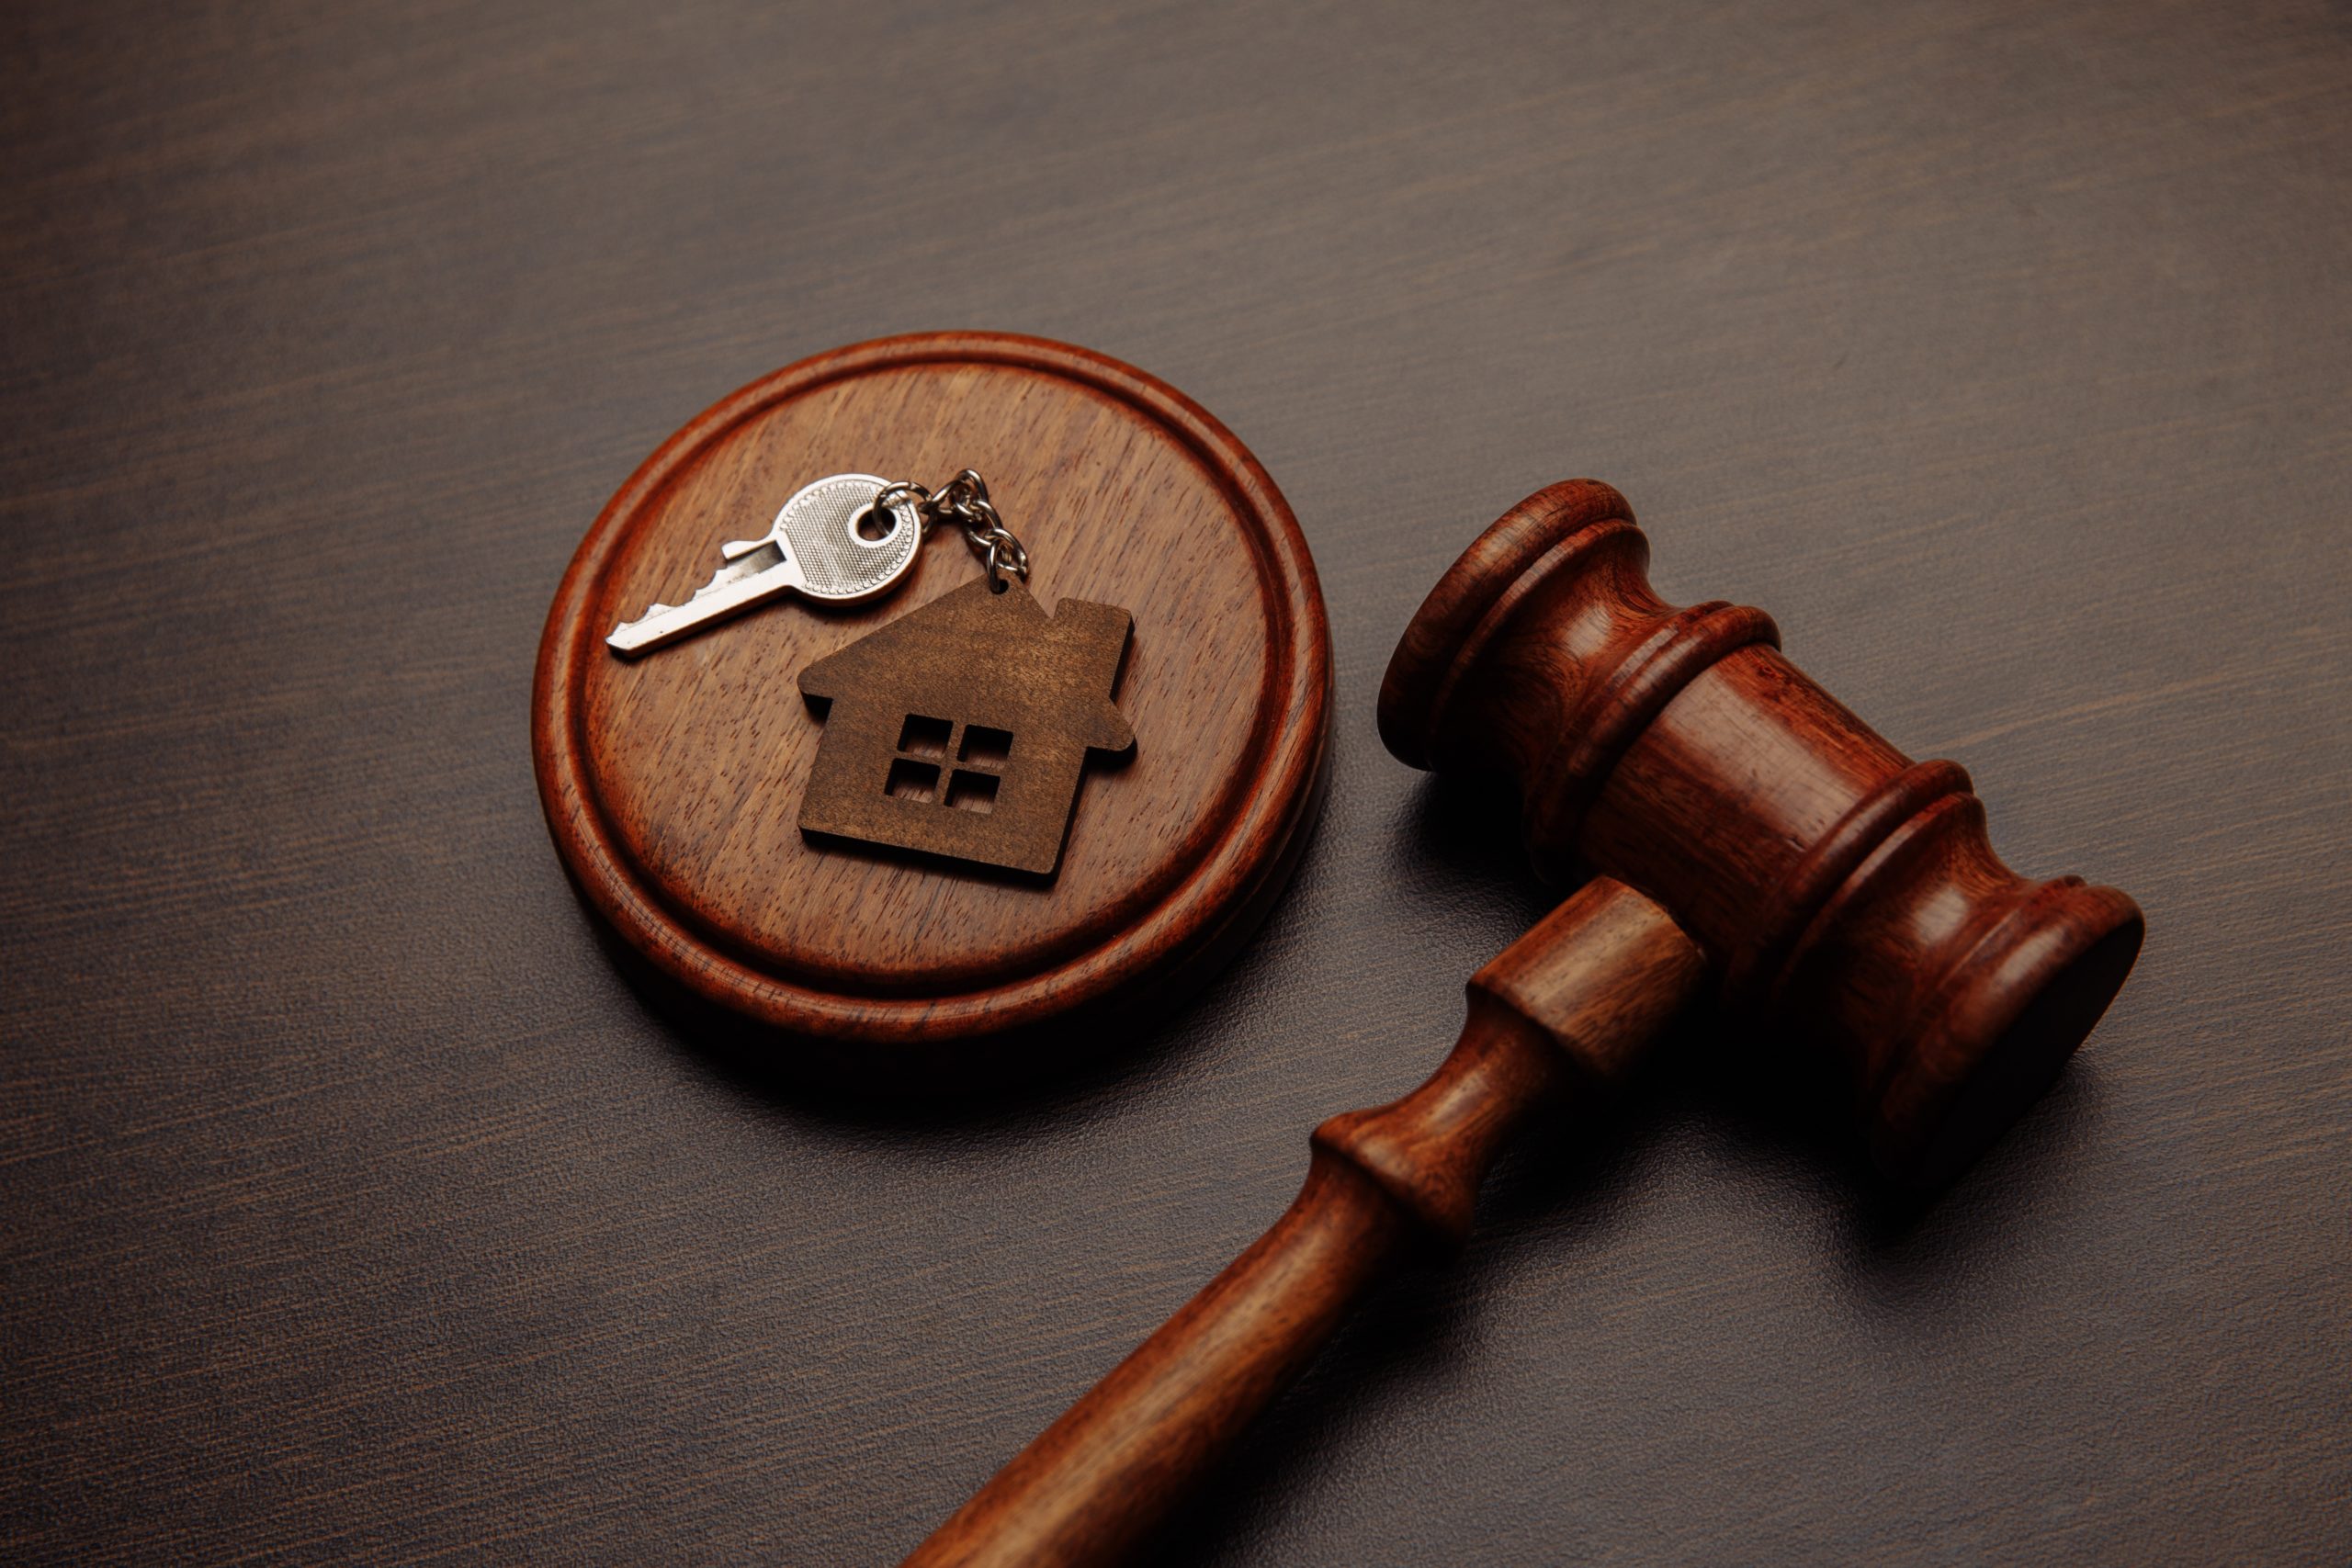 Judge gavel sits next to a keychain shaped like a house